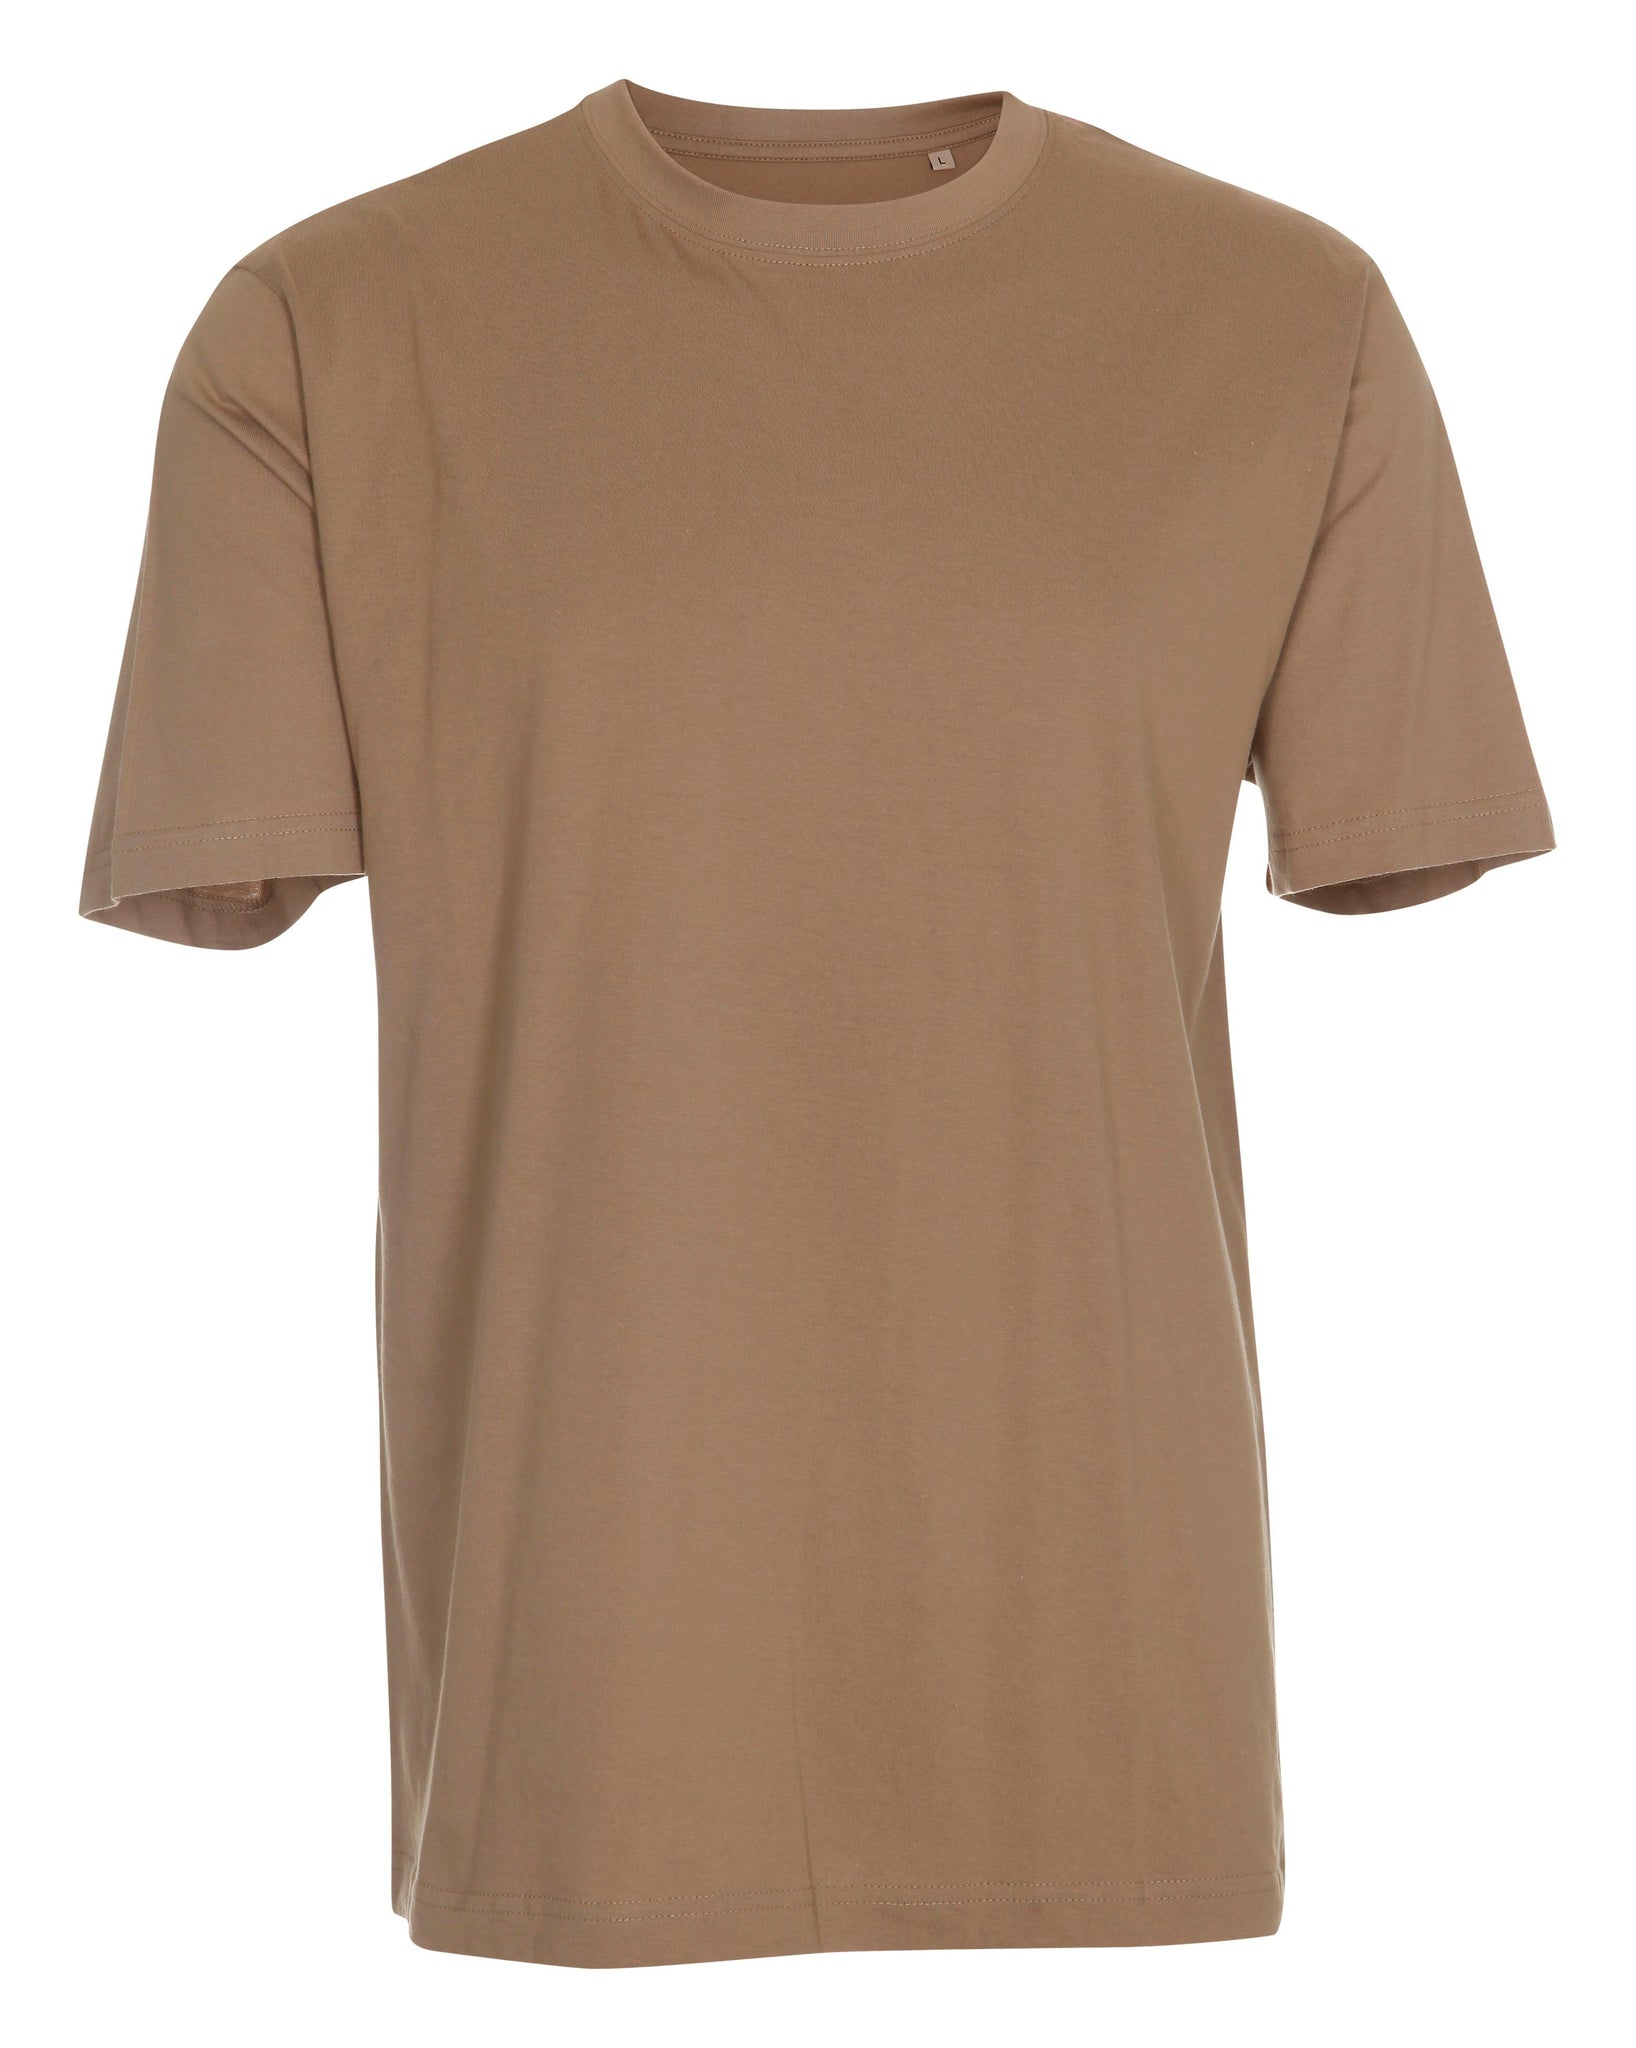 LabelFree CLASSIC T-SHIRT - T-Shirt - JA Profil 